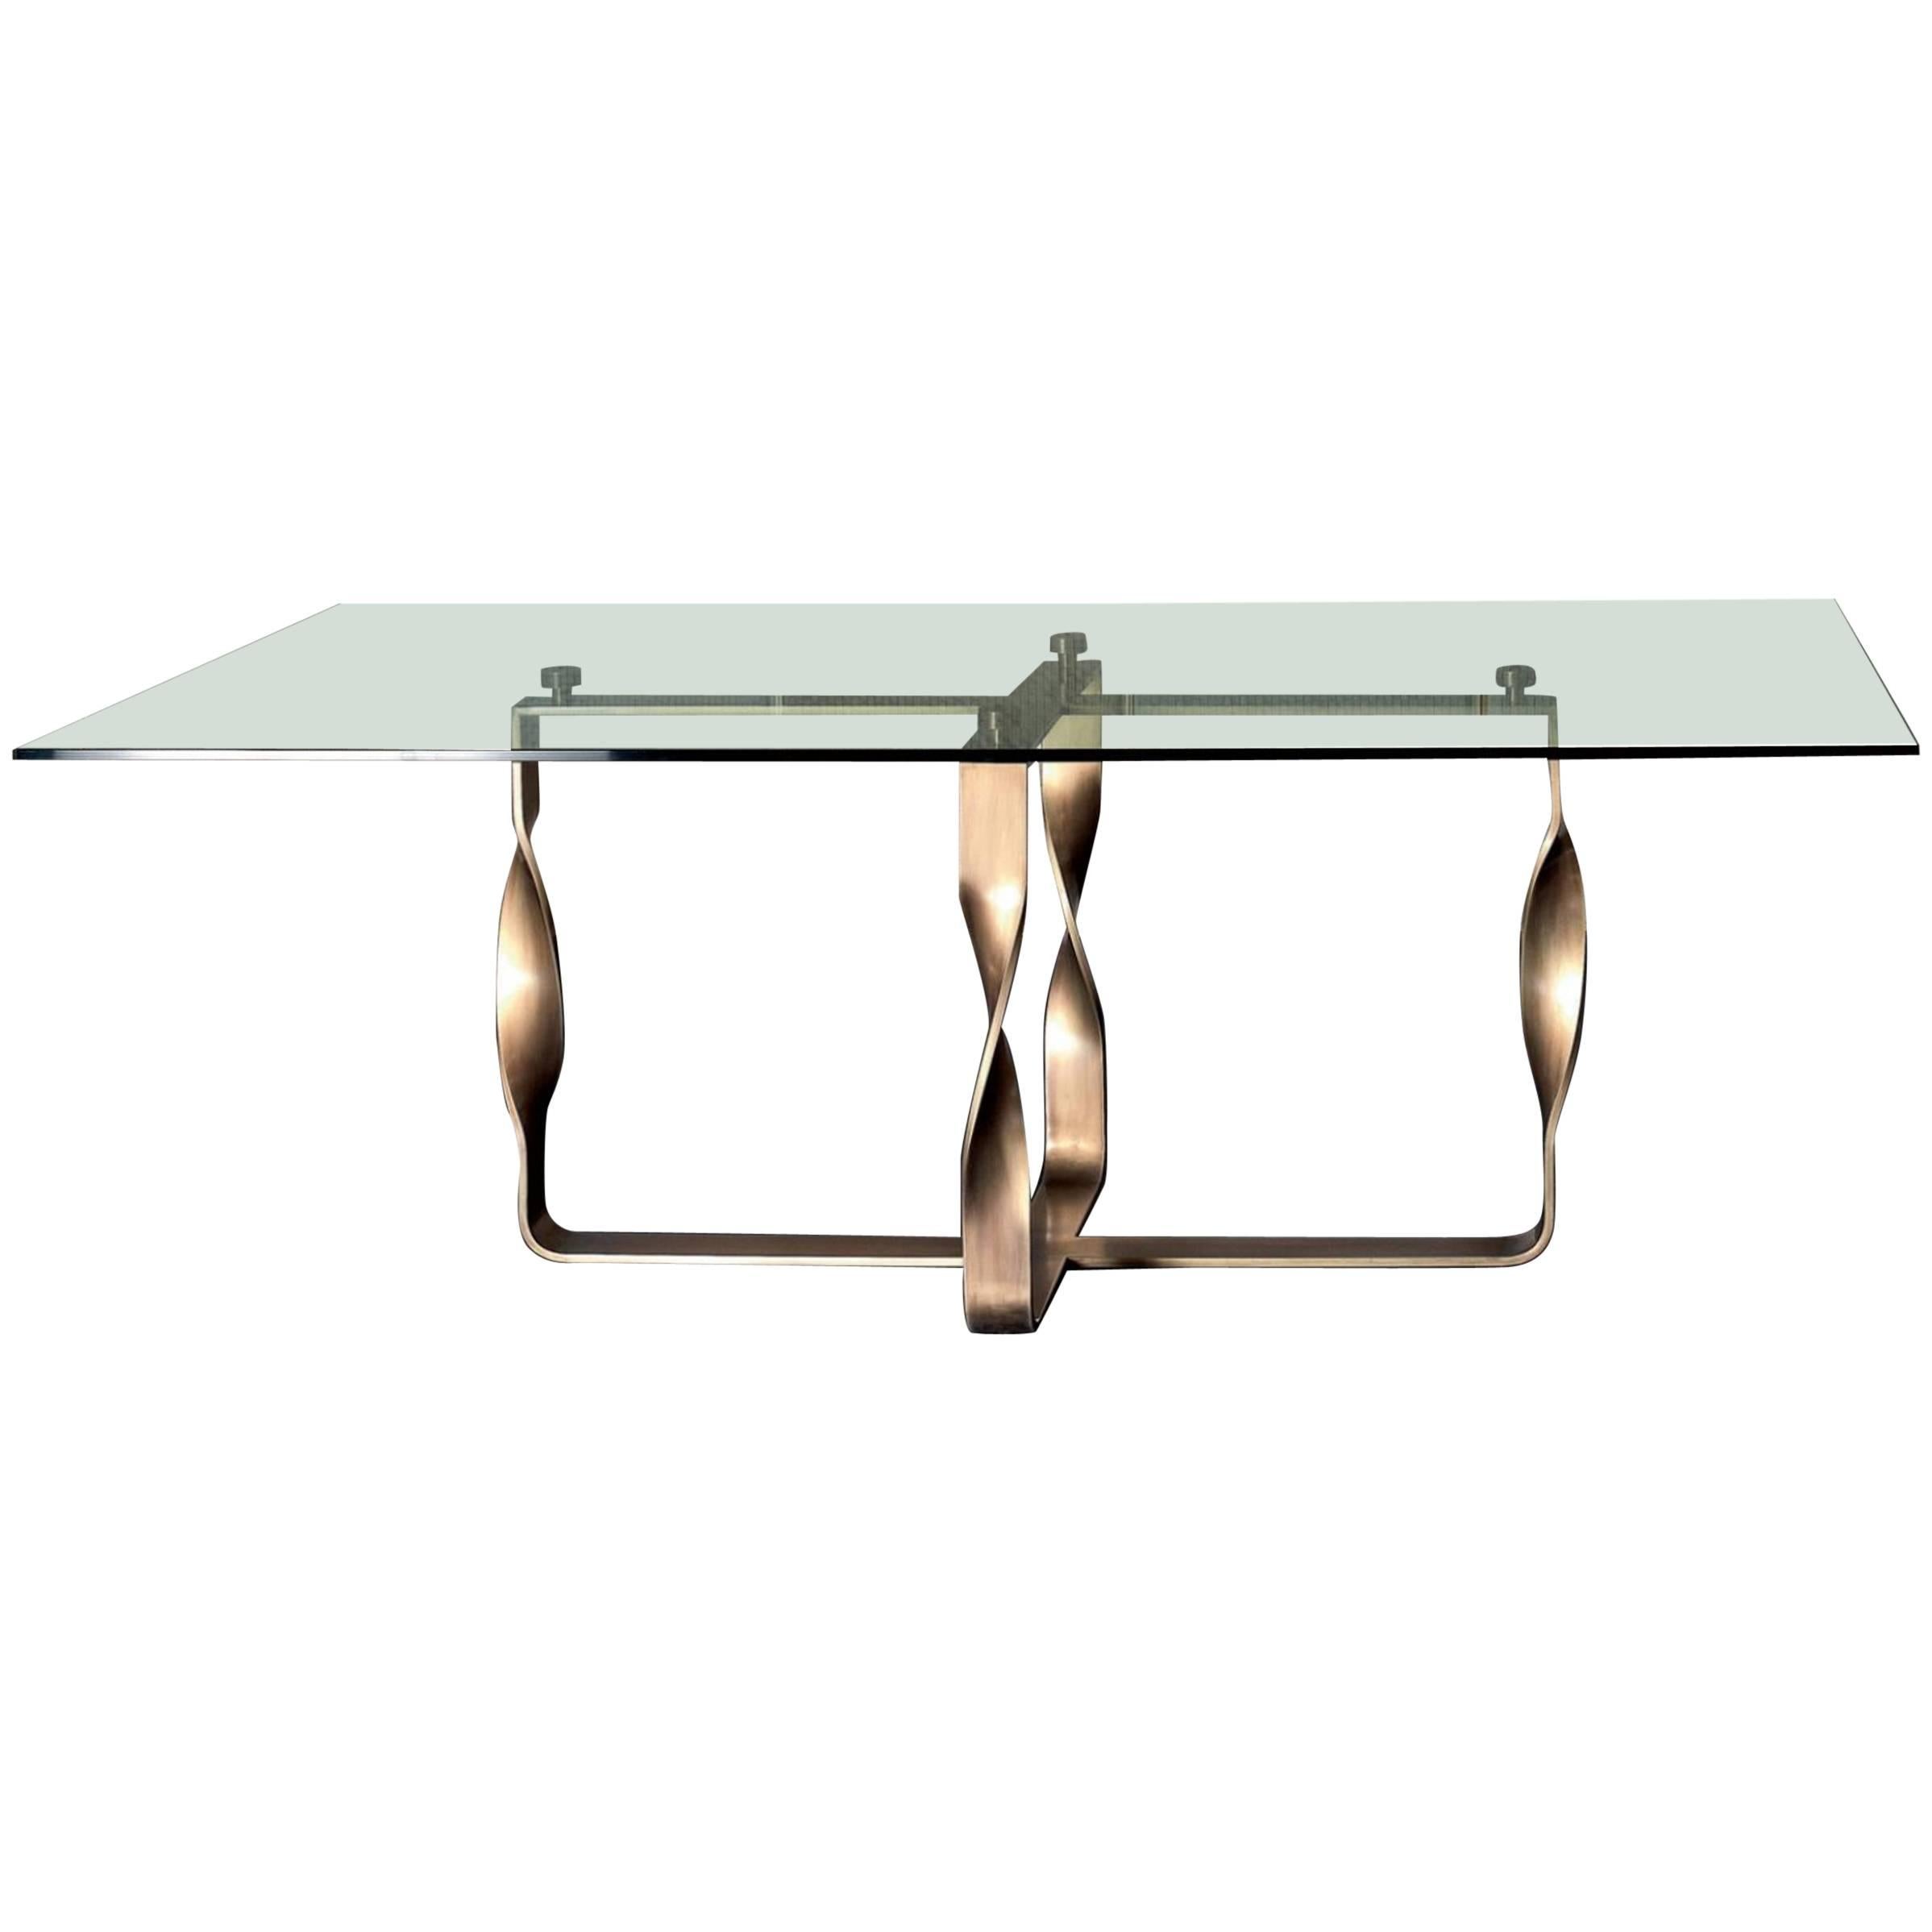 Torsade-Tisch mit Bronzefußbeinen und Glasplatte